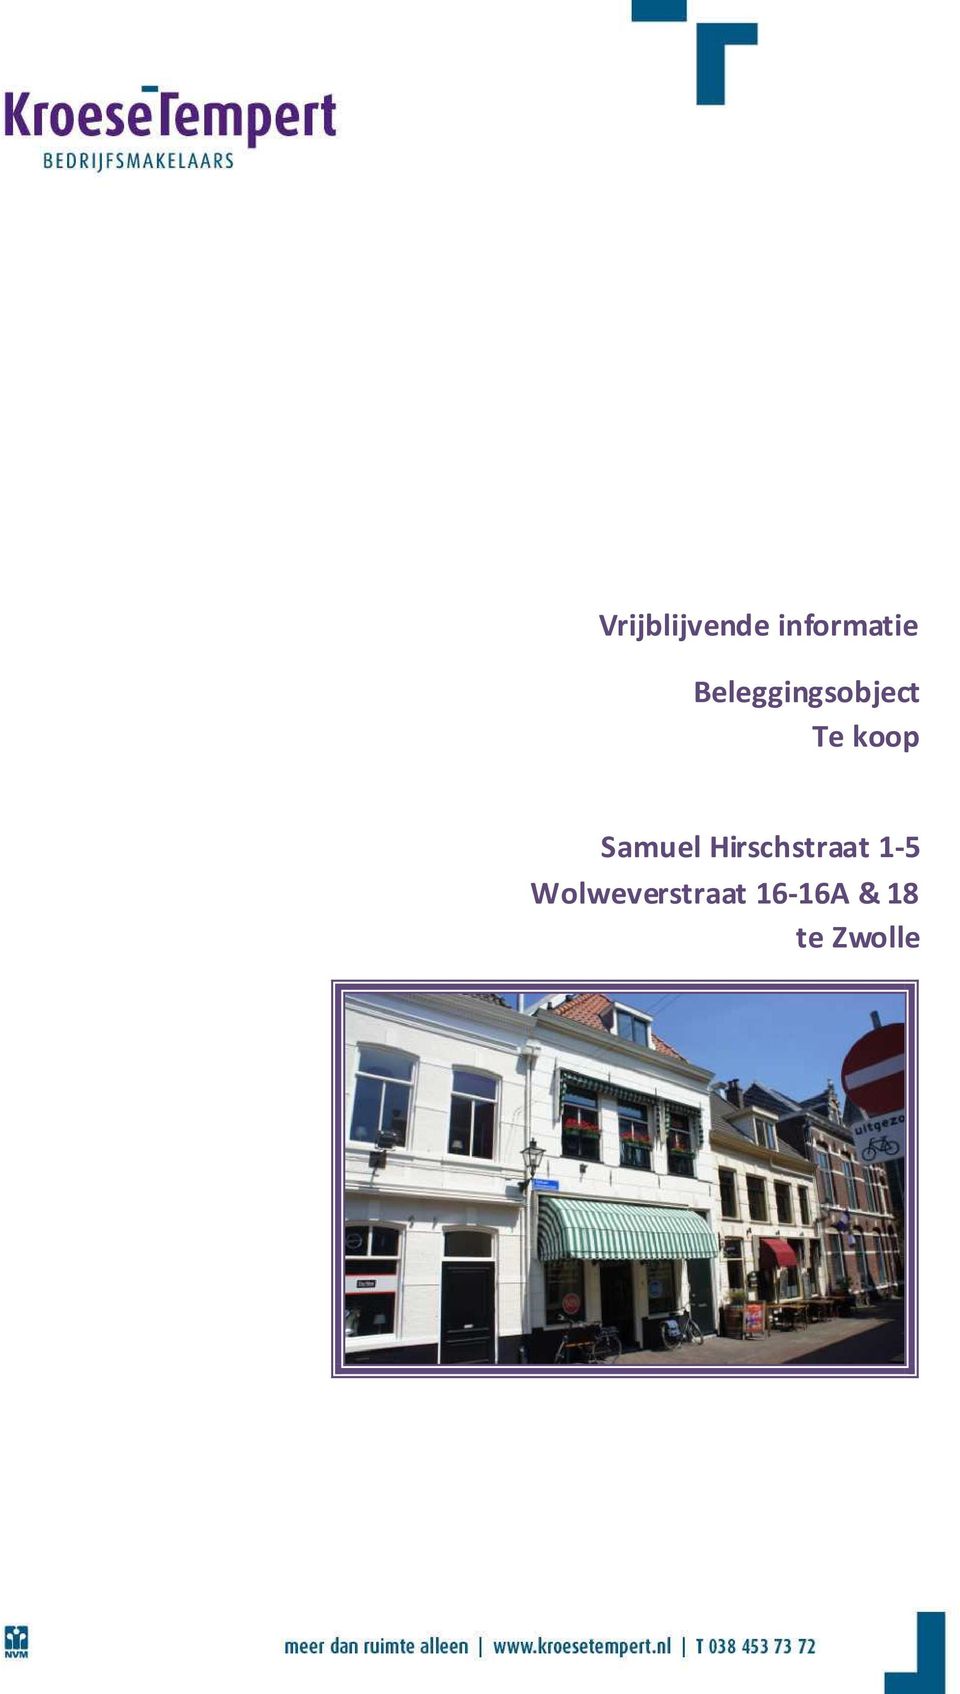 Samuel Hirschstraat 1-5